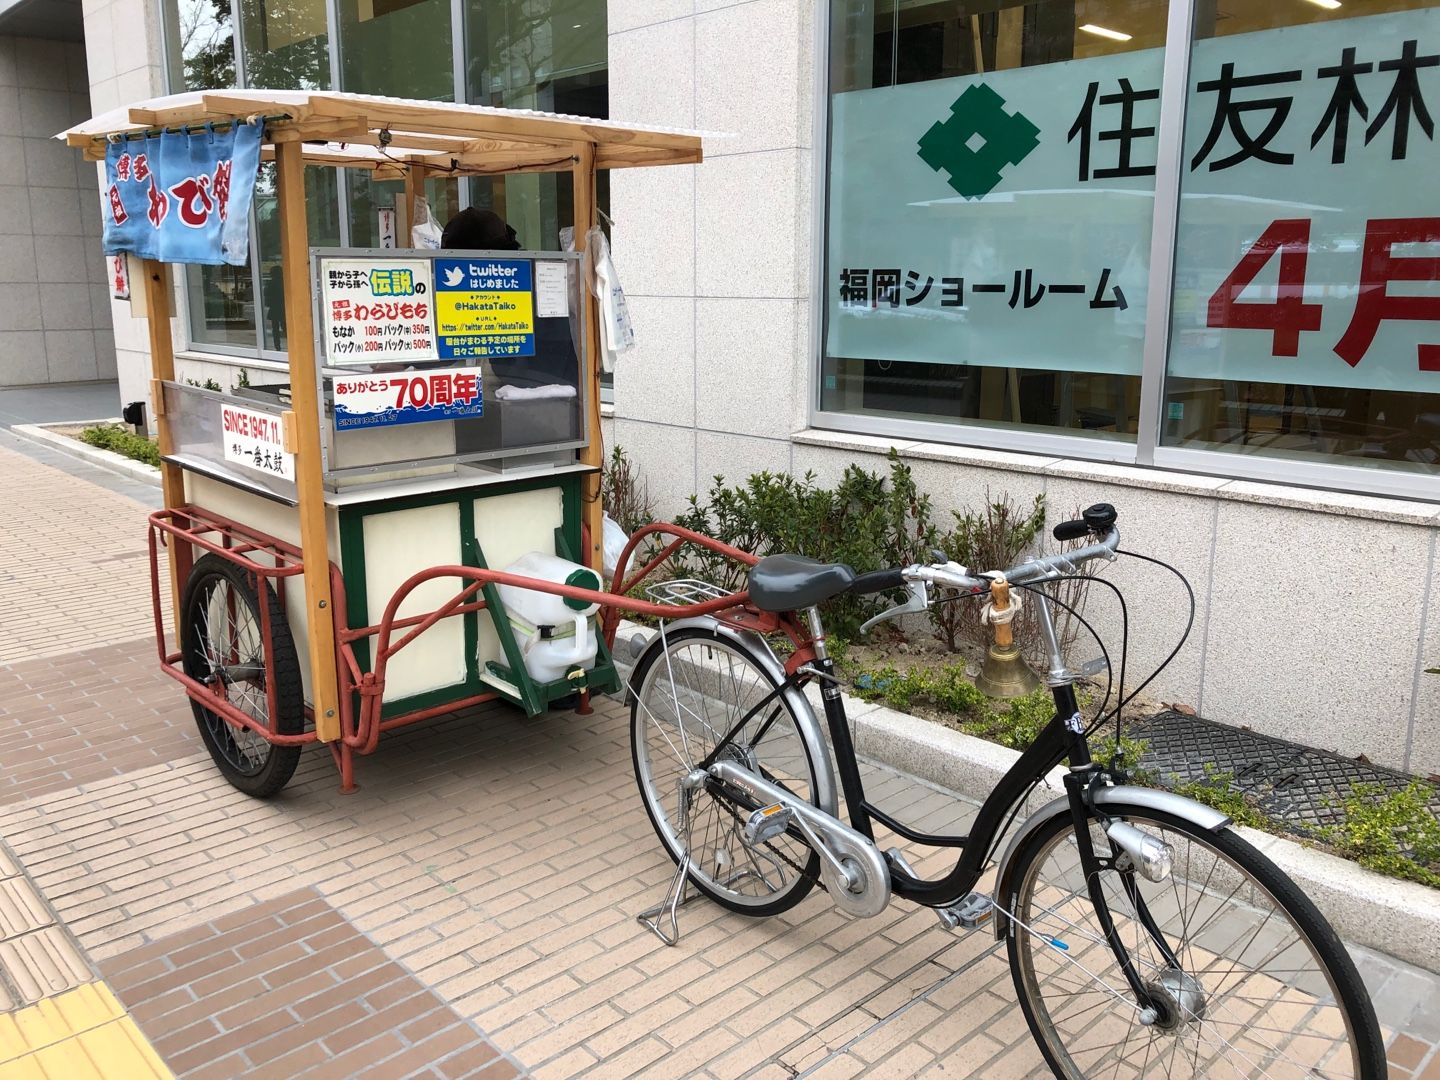 わらび餅の自転車リヤカー移動販売 博多一番太鼓 さん 福岡 博多 人力車出張サービスで思い出イベント あなたの夢を運びます 博多人力屋 楽天ブログ